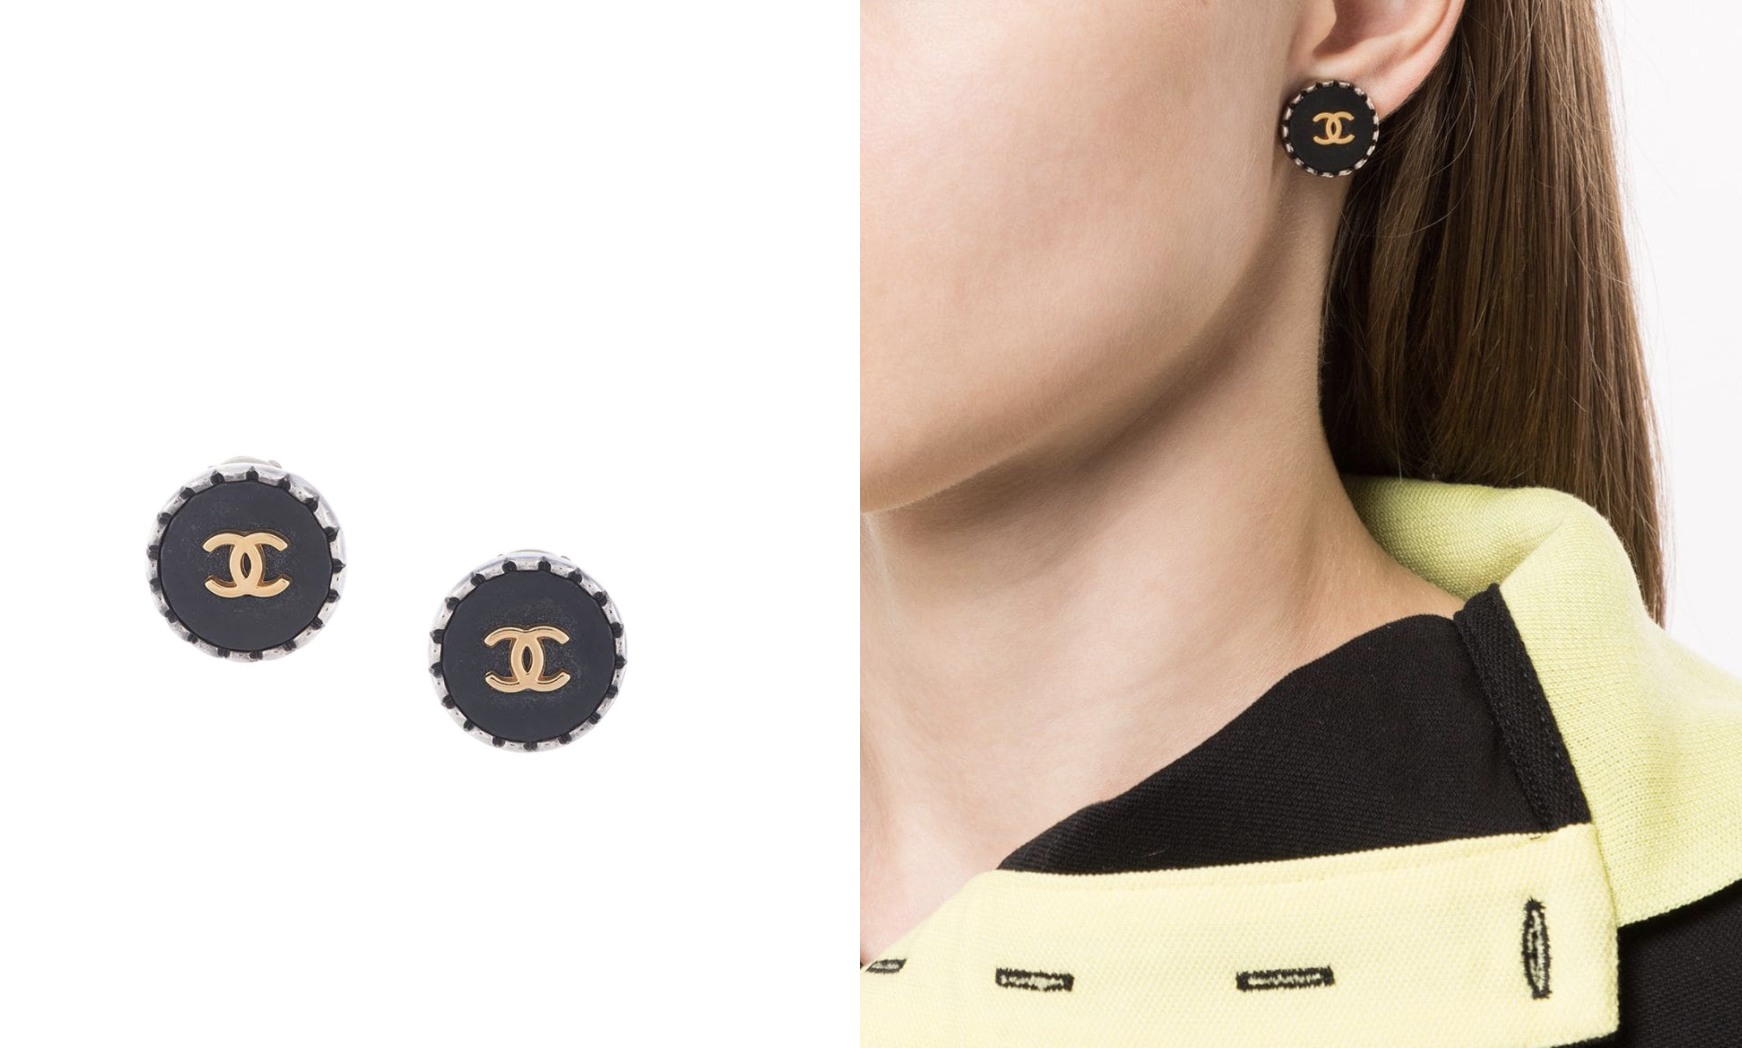 如果你喜歡拼色設計，一定不能錯過這對Chanel耳環。時裝穿搭最好身上只有3種顏色，來營造簡約的精緻感覺。這對耳環同樣只運用了3種顏色，黑色、銀色和金色。以銀色作為外邊設計，把視覺重點落在耳環上，有效修飾面形。